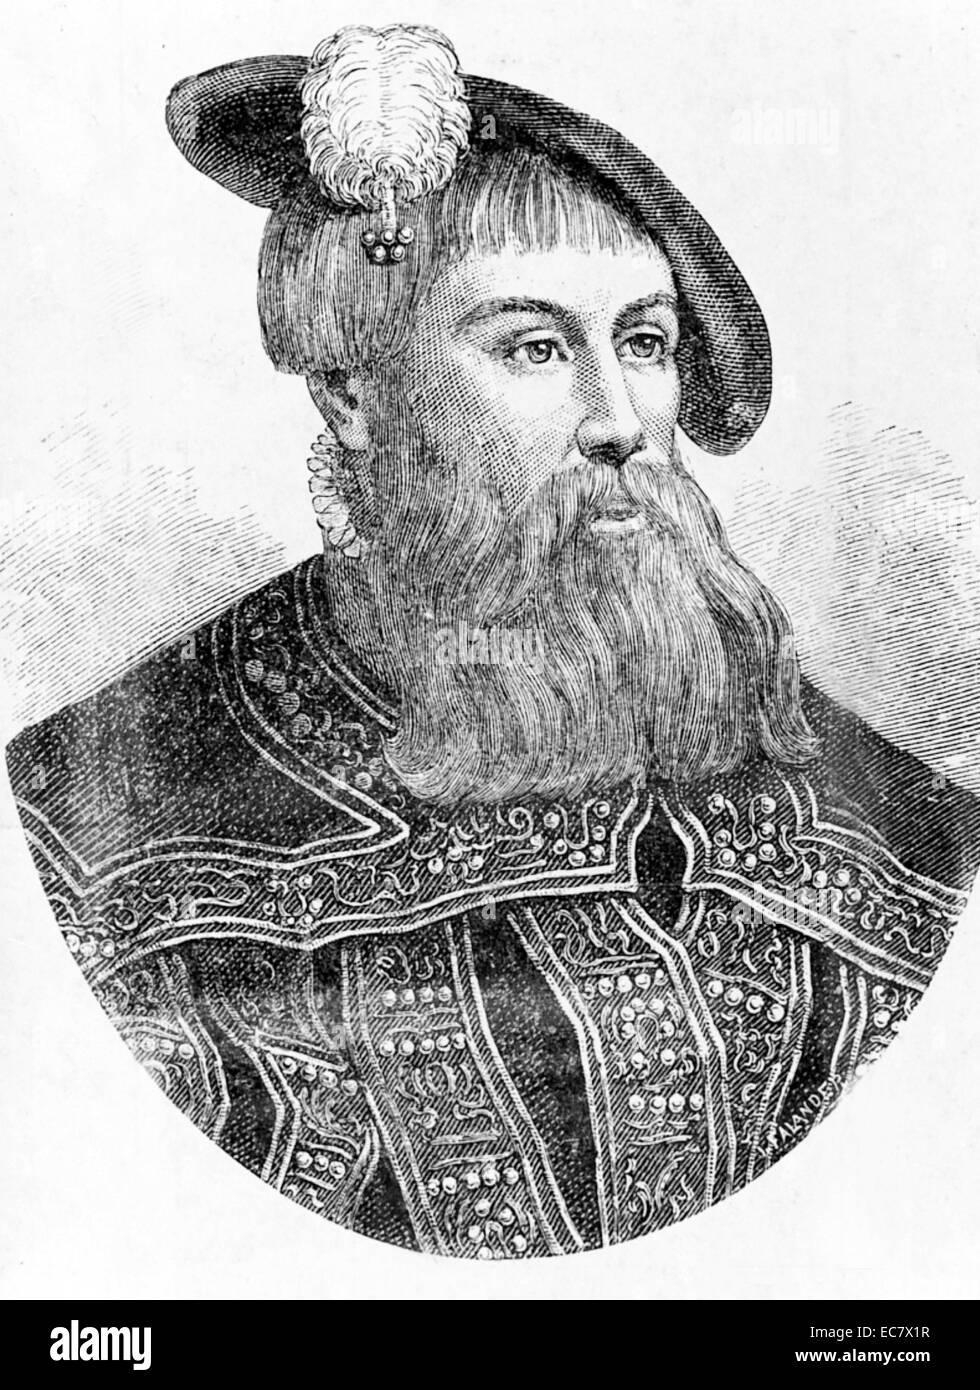 Gustavo, noto anche come Gustav Vasa (12 maggio 1496 - 29 settembre 1560), fu re di Svezia dal 1523 fino alla sua morte, precedentemente self-riconosciuto protettore del reame (Rikshövitsman) dal 1521, durante il corso della guerra svedese di liberazione contro il Re Cristiano II di Danimarca, Norvegia e Svezia. Il Gustav's elezione come re il 6 giugno 1523 e il suo trionfale ingresso in Stoccolma undici giorni più tardi hanno segnato la fine del borgo medievale di Svezia la monarchia elettiva nonché l'Unione di Kalmar. Questo ha creato una monarchia ereditaria sotto la casa di Vasa e dei suoi successori, incluso l'attuale casa di Bernadotte. Foto Stock